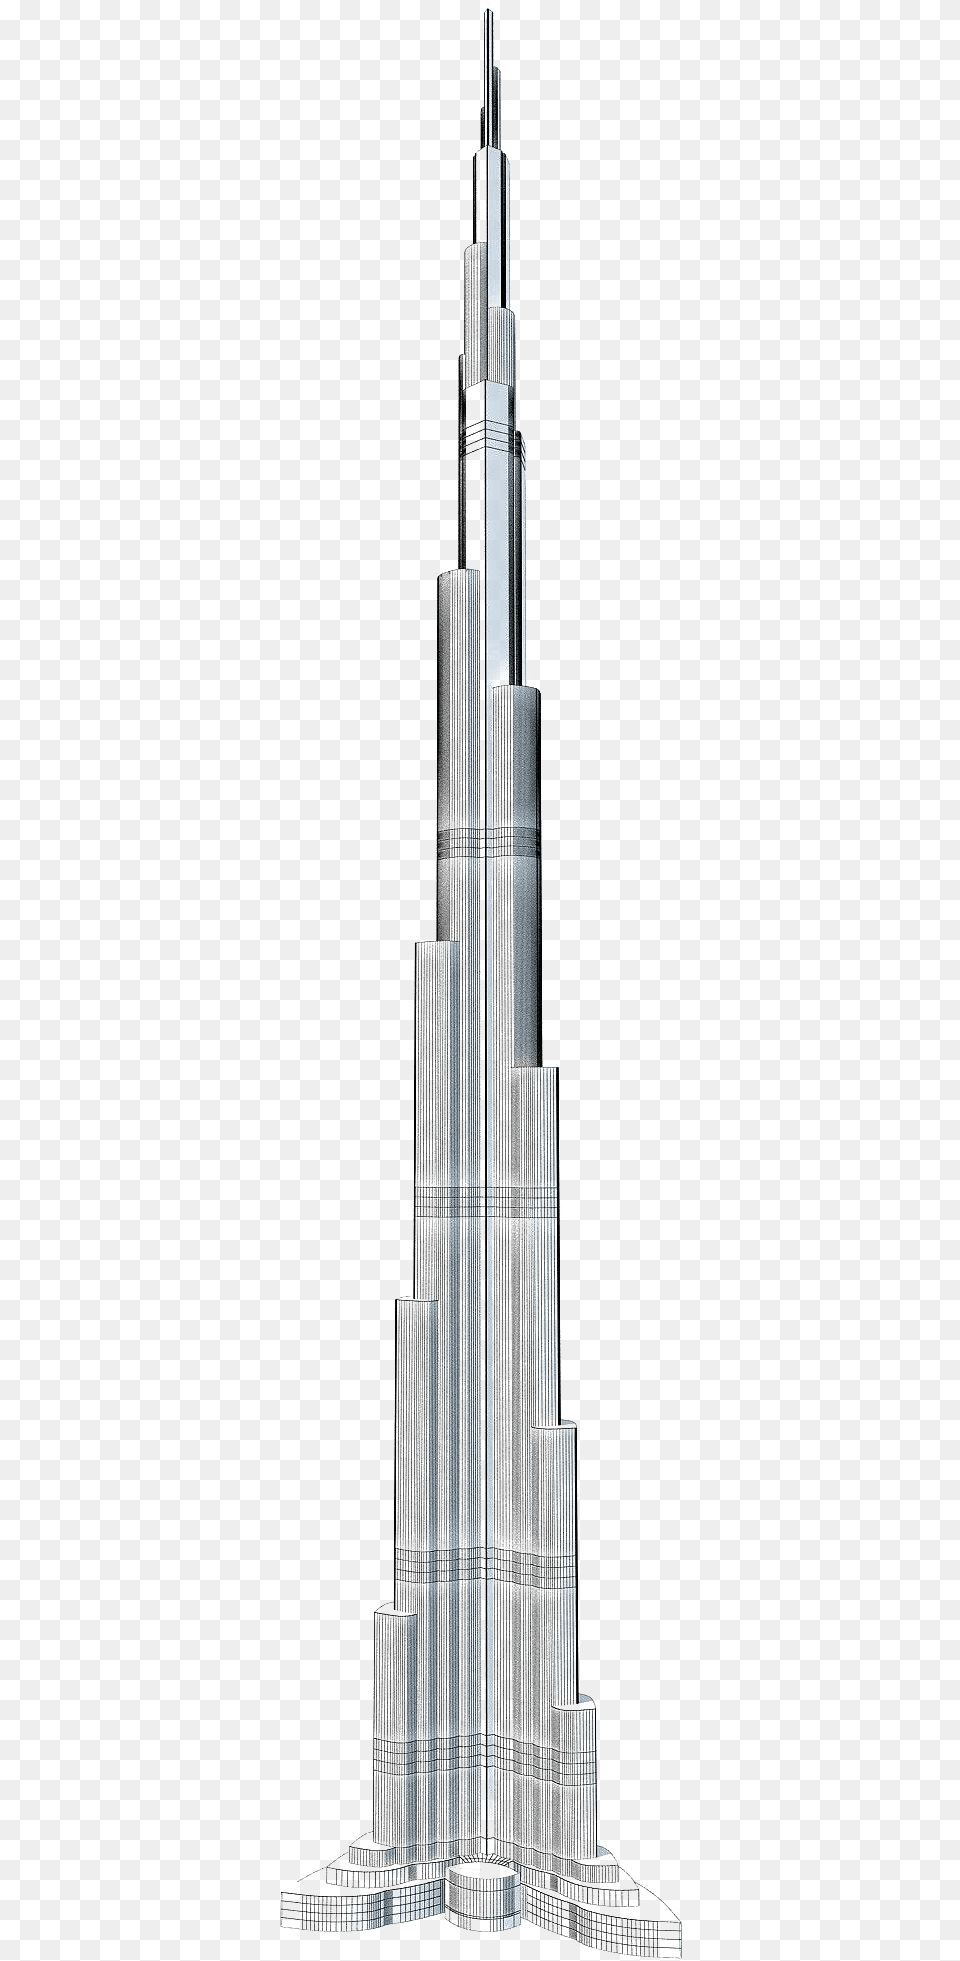 Transparent Burj Khalifa, Architecture, Building, City, High Rise Free Png